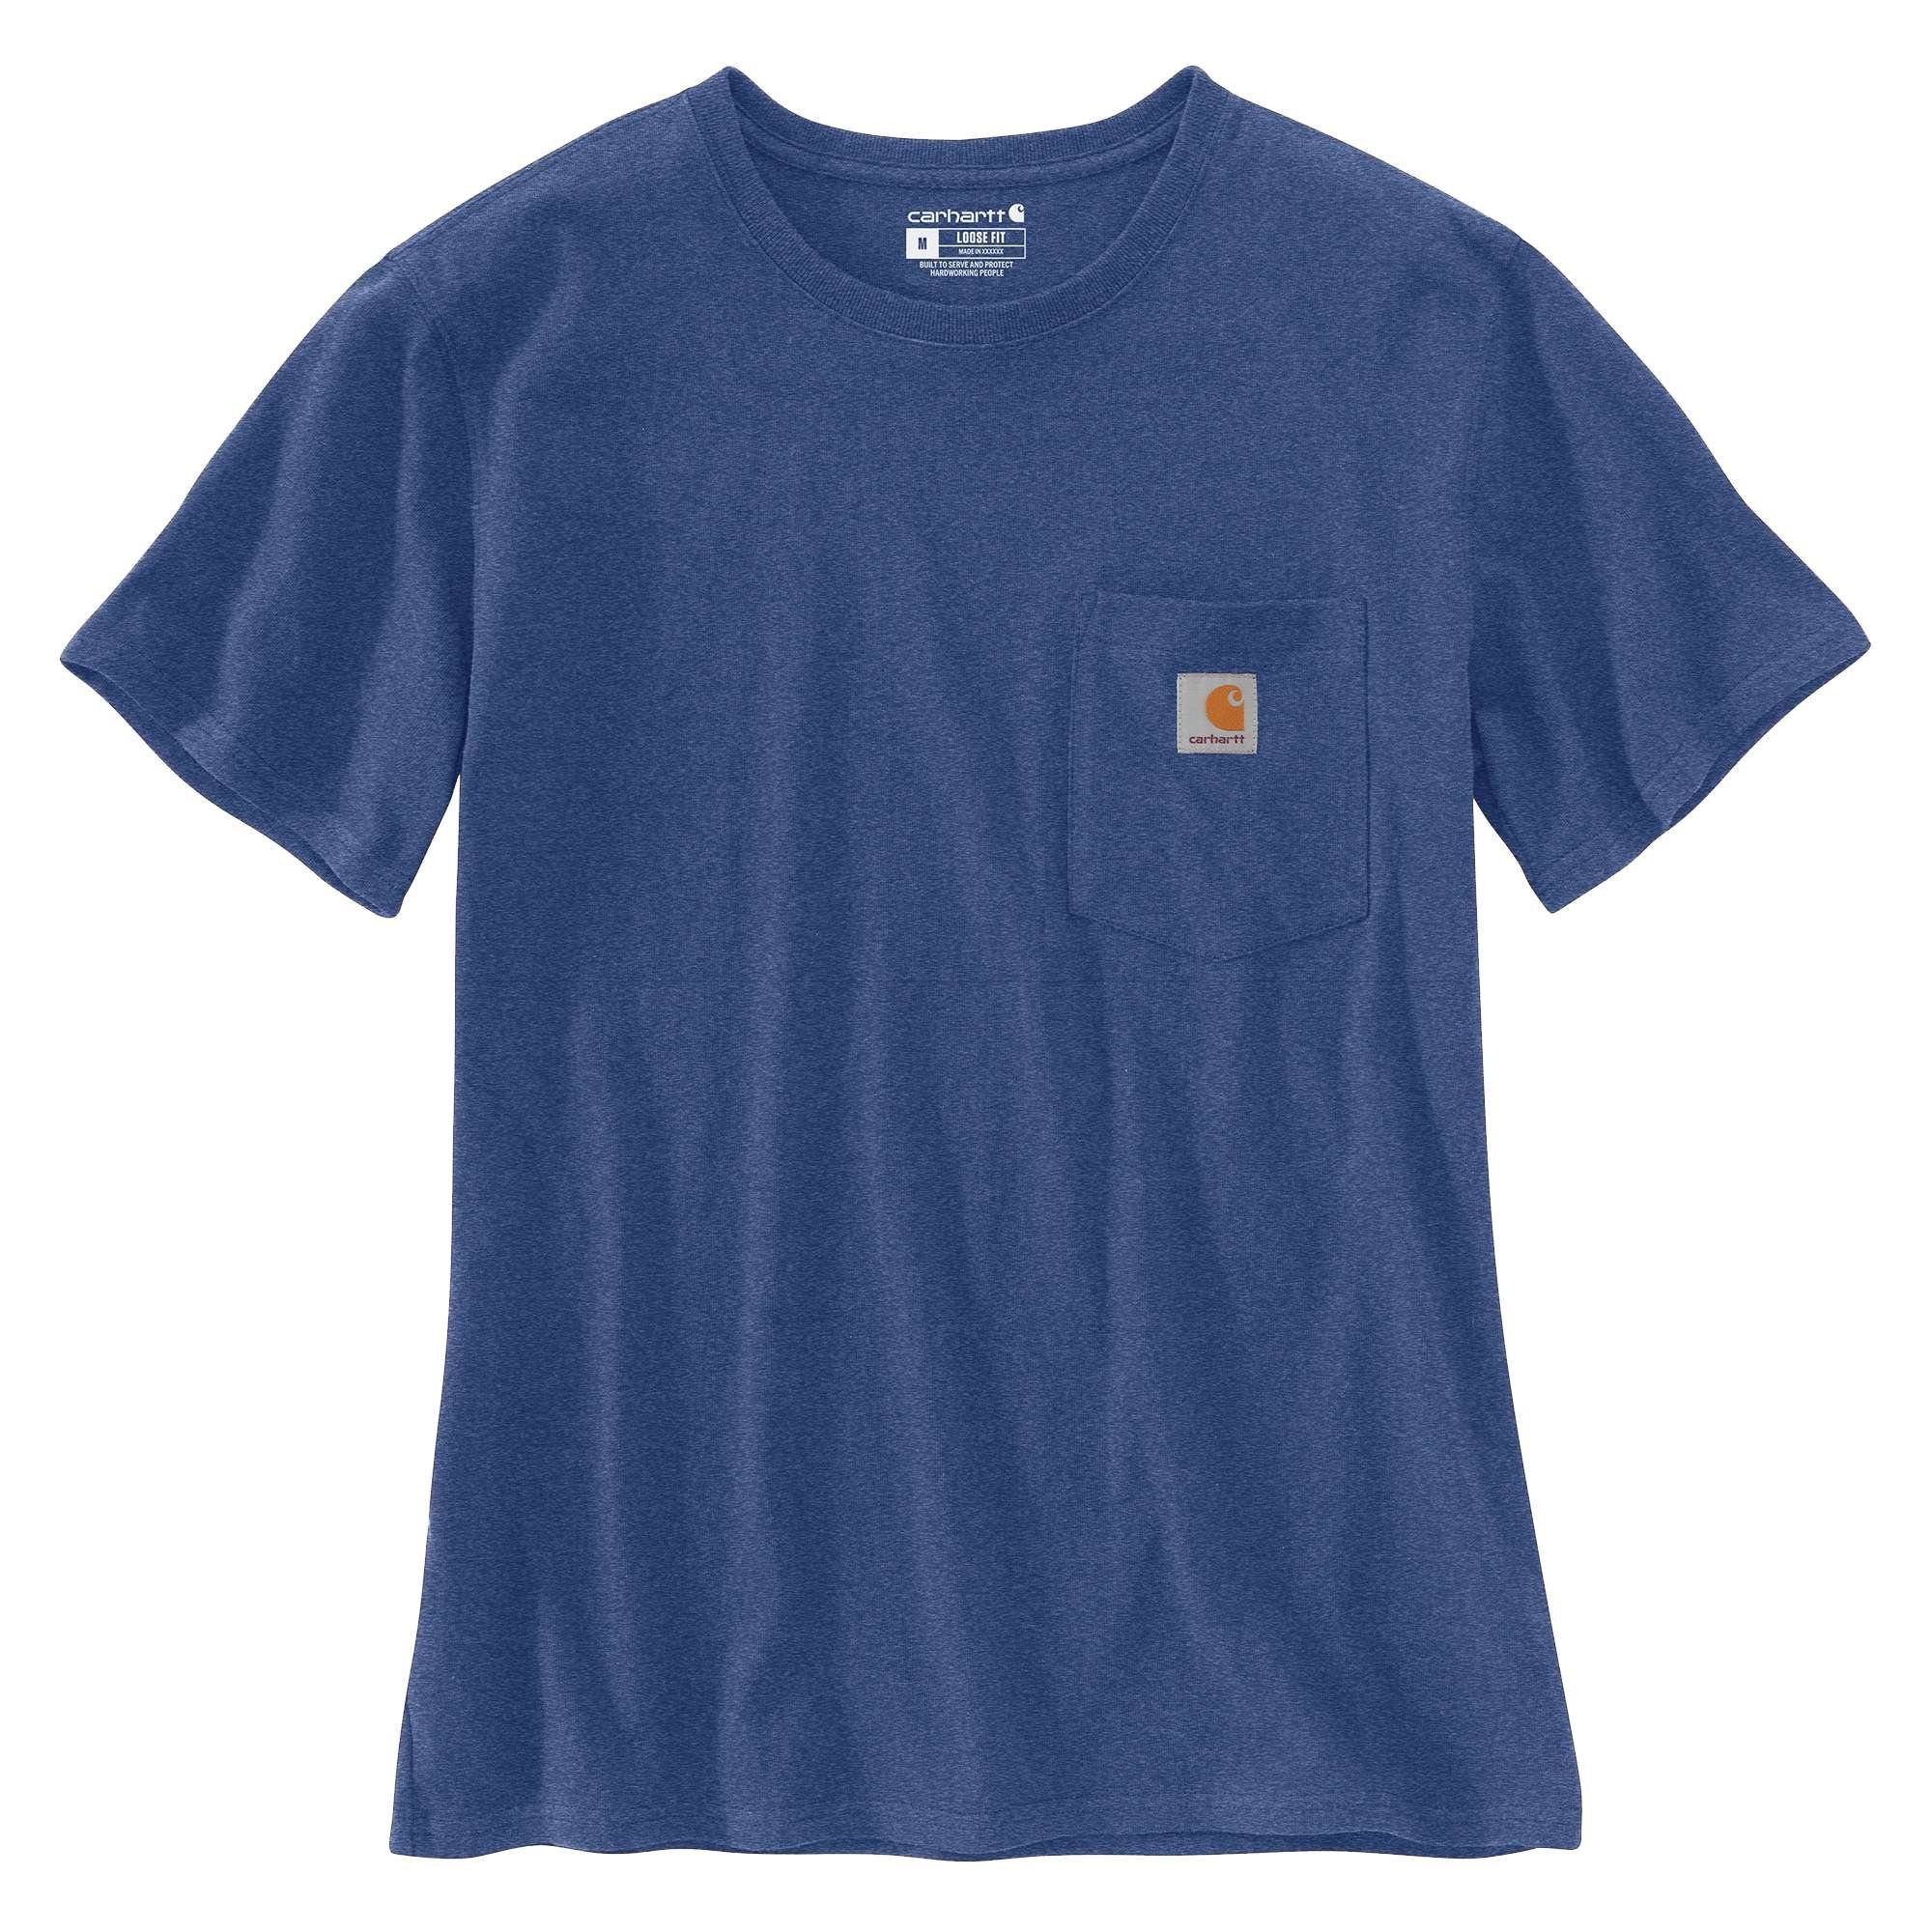 Carhartt T-Shirt Carhartt Damen T-Shirt Heavyweight heather blue Adult Fit scout Pocket Short-Sleeve Loose